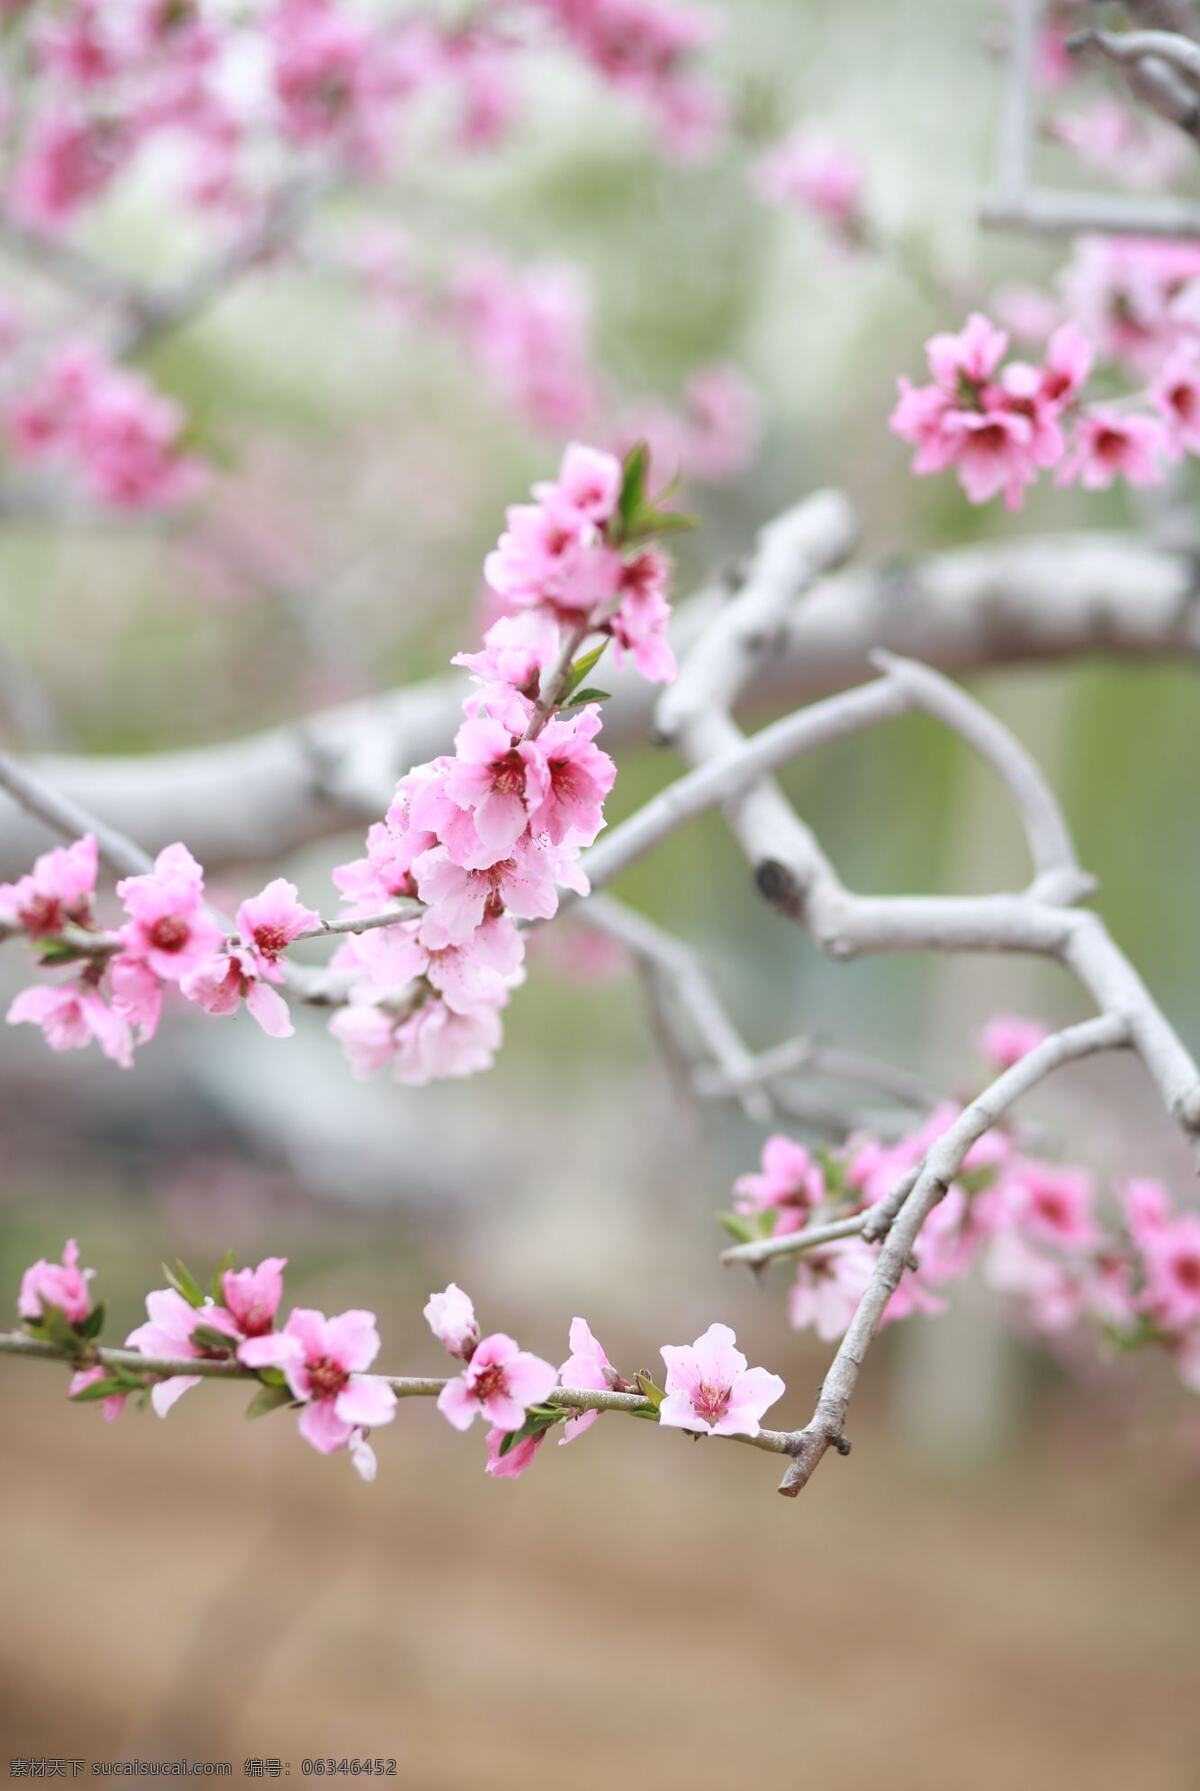 粉色桃花 桃花 花朵 桃园 背景 粉色 可爱花朵 桃花特写 意境 生物世界 花草